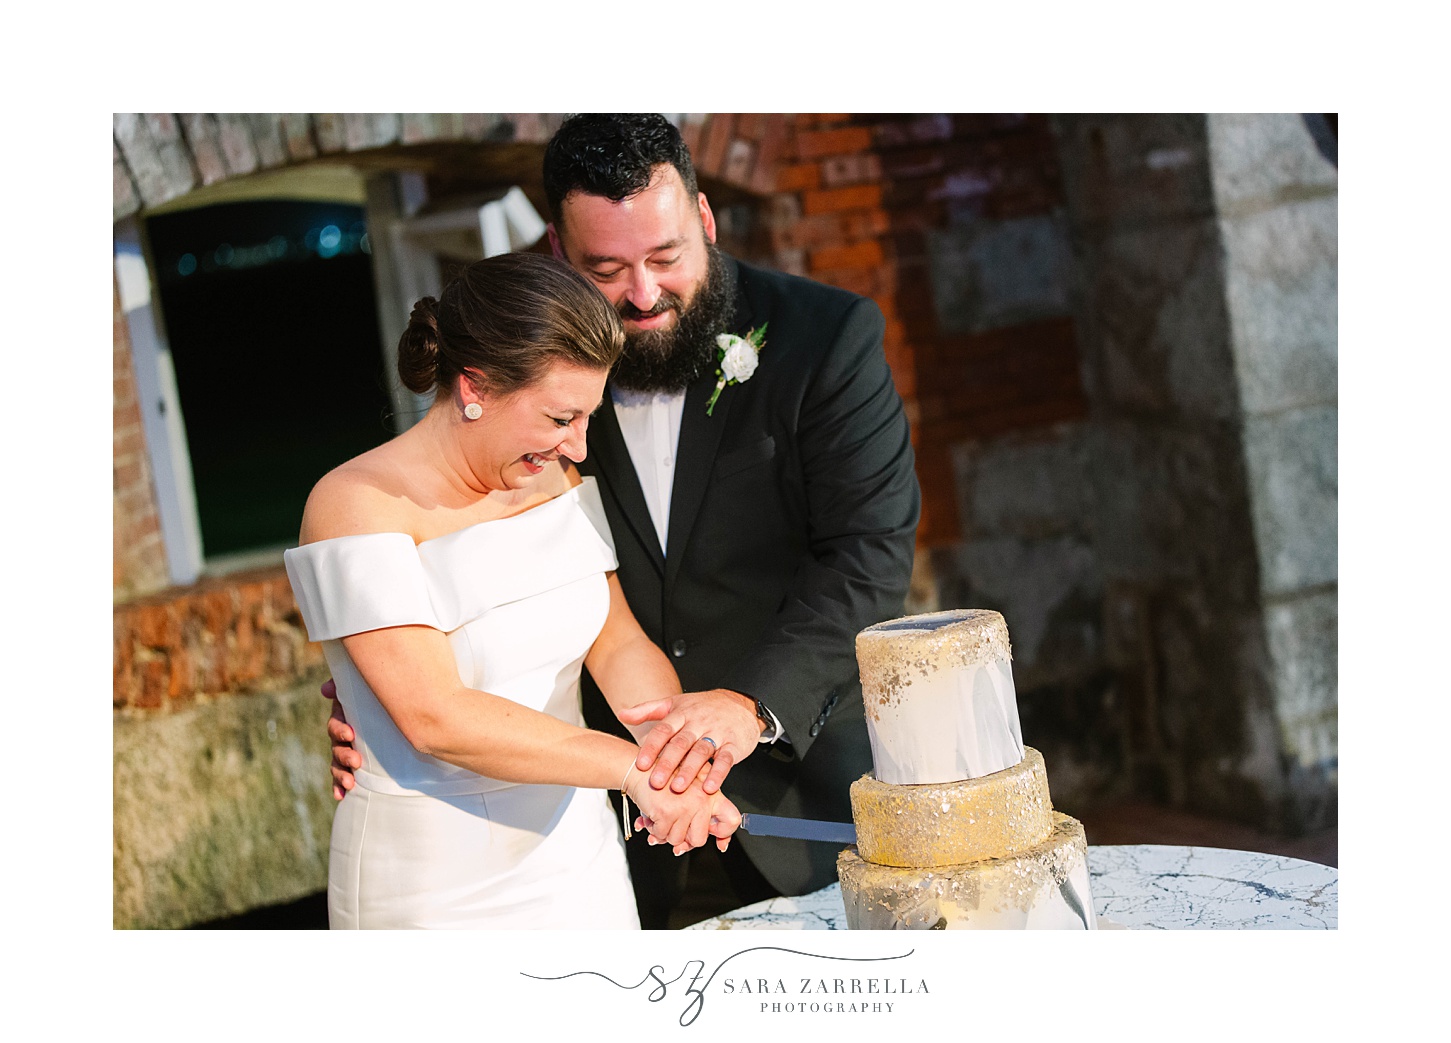 bride and groom cut wedding cake during RI wedding reception